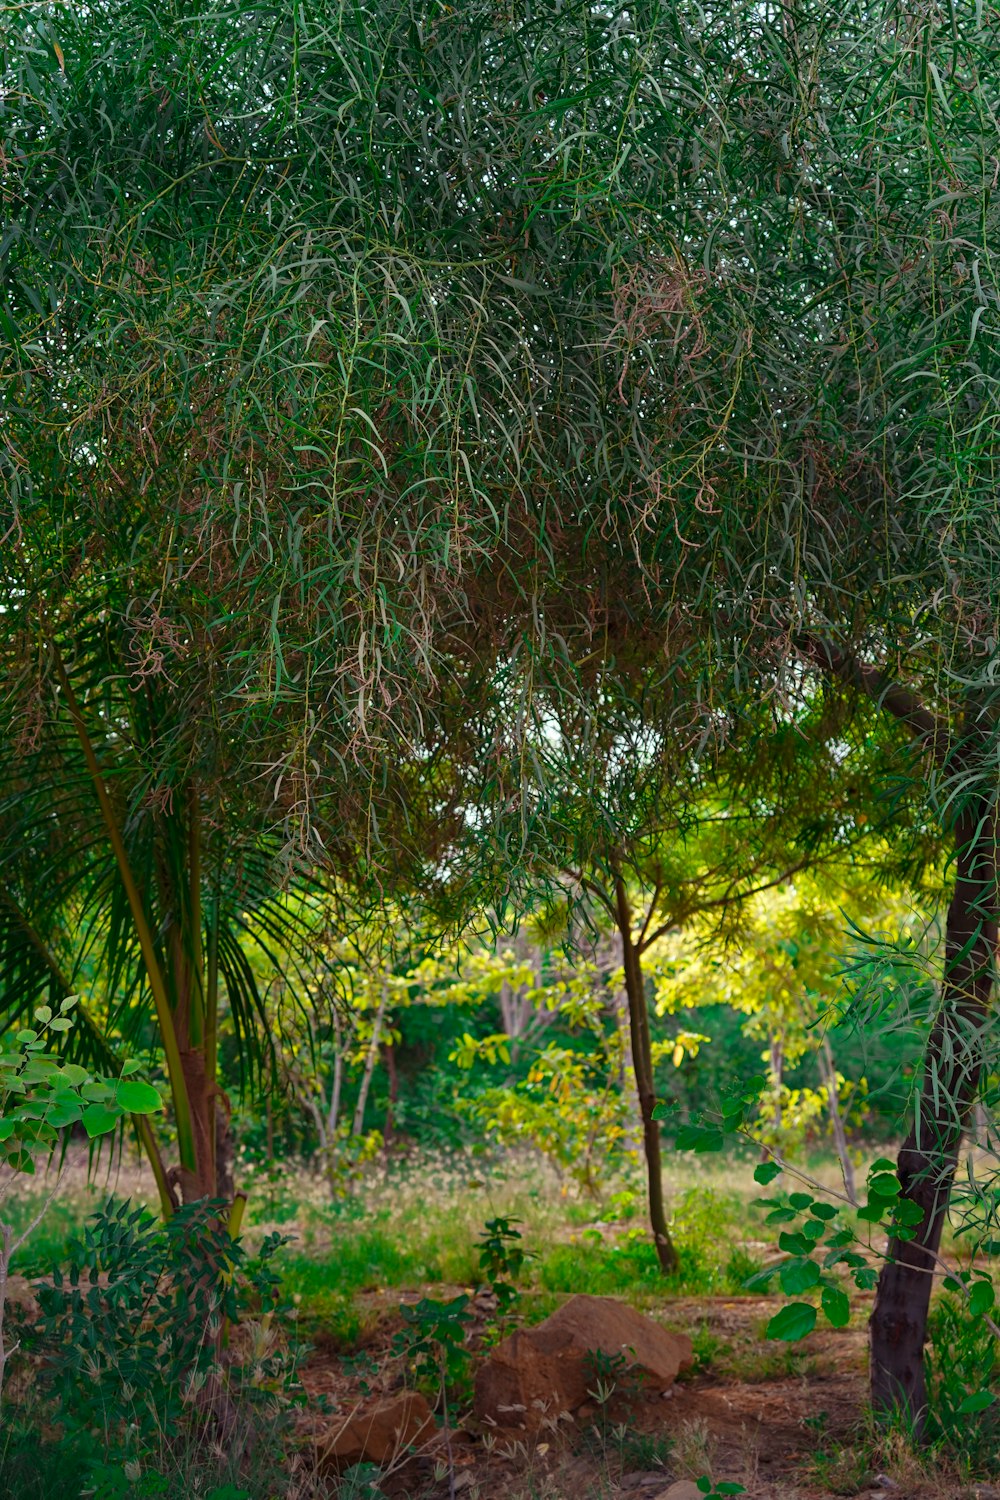 a giraffe standing under a lush green tree